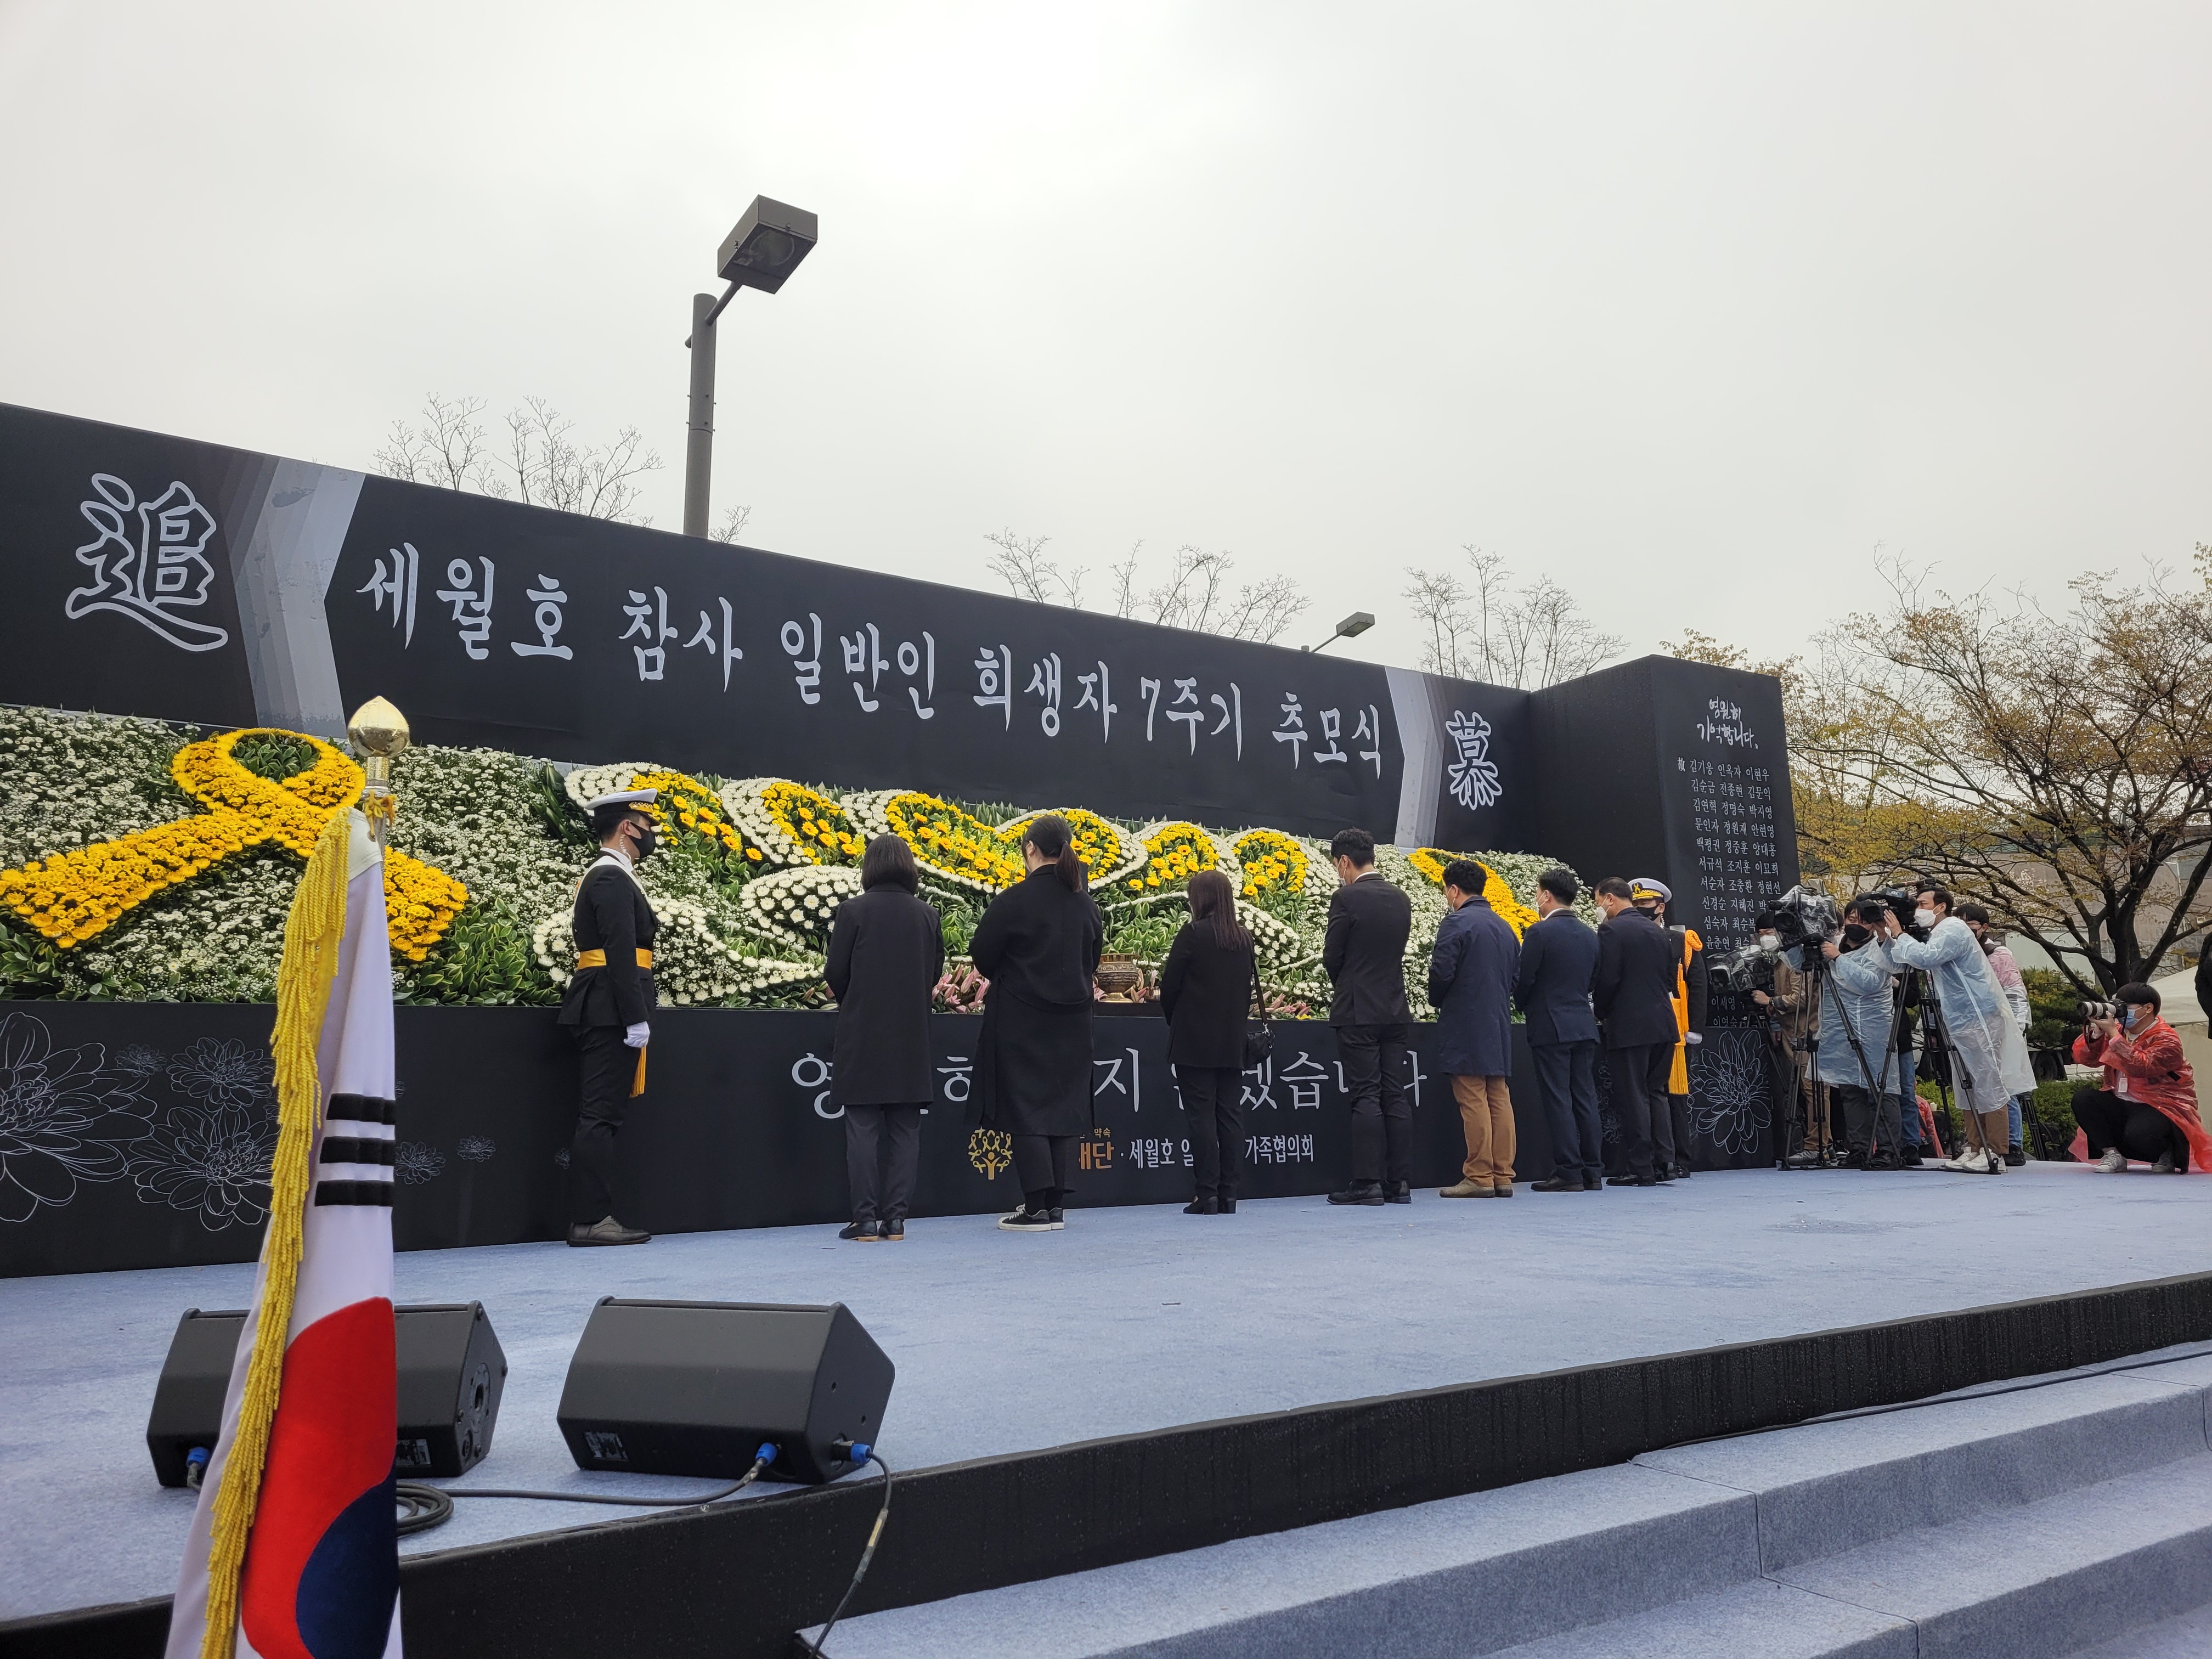 16일 오전 11시 세월호 일반인 희생자 41명과 민간인잠수사 2명이 잠든 인천가족공원에서 세월호 참사 7주기를 맞아 일반인 희생자 추모식이 열렸다. 최영권 기자 story@seoul.co.kr